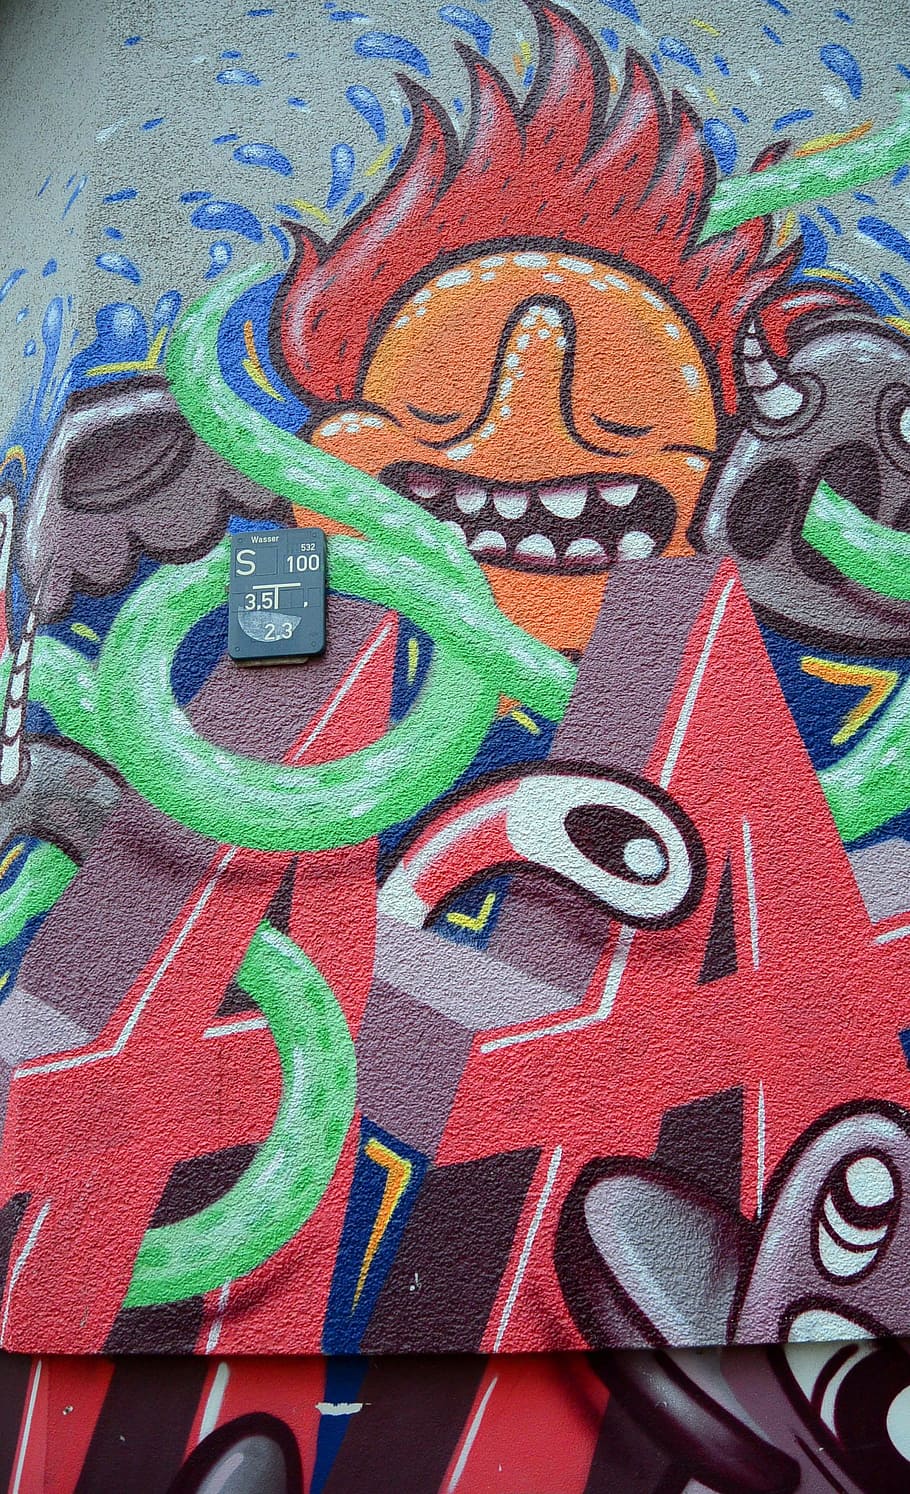 Graffiti, Street Art, Urban Art, Art, Wall, wall, mural, facade, art, sprayer, berlin